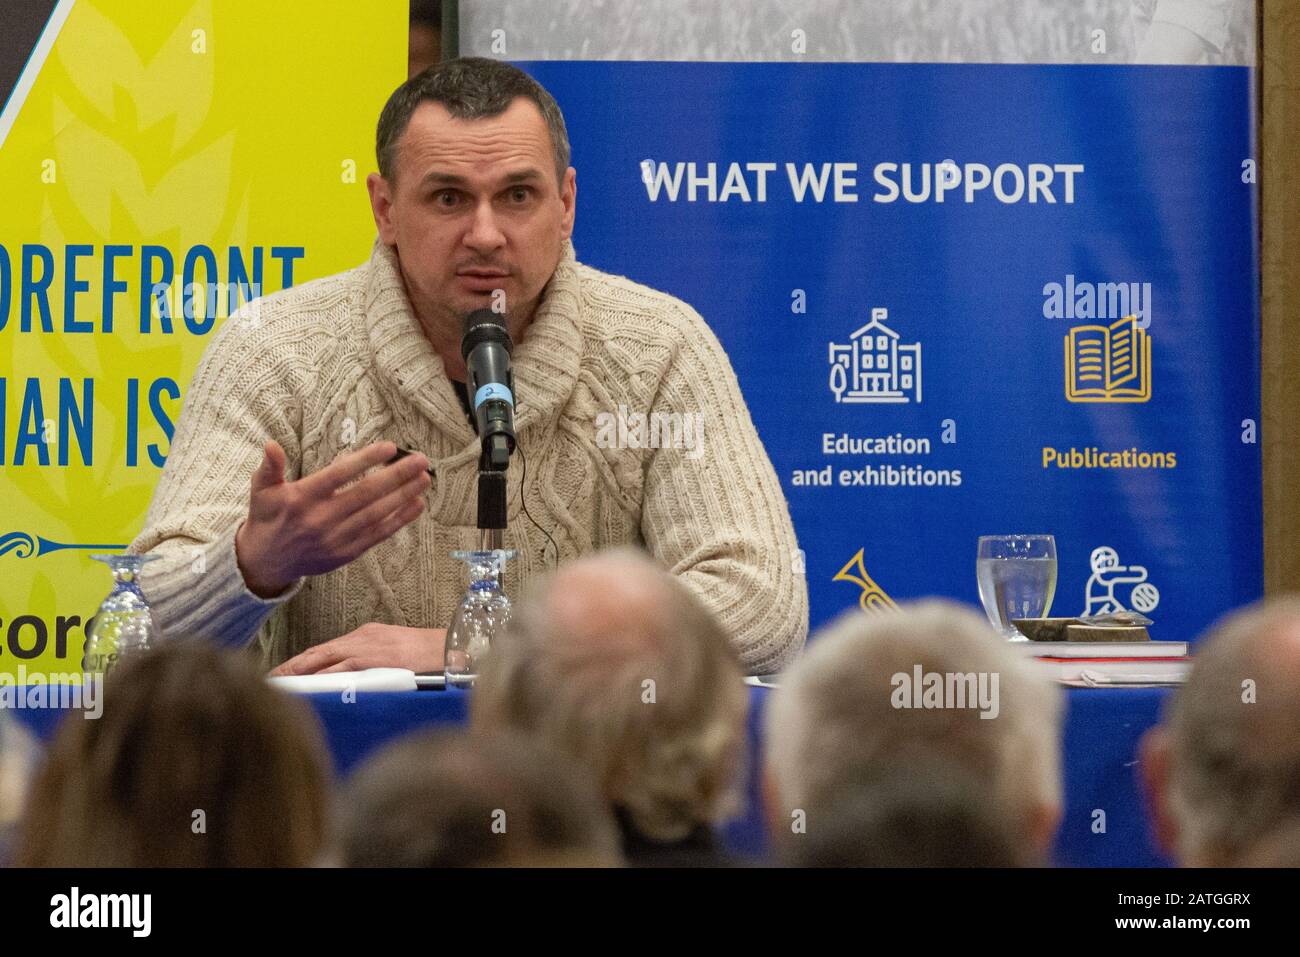 Oleg Sentsov, cinéaste, écrivain et militant ukrainien de Crimée, lors de son rapport pour la communauté ukrainienne, le 02 février 2020 à Toronto, ON, Cana Banque D'Images